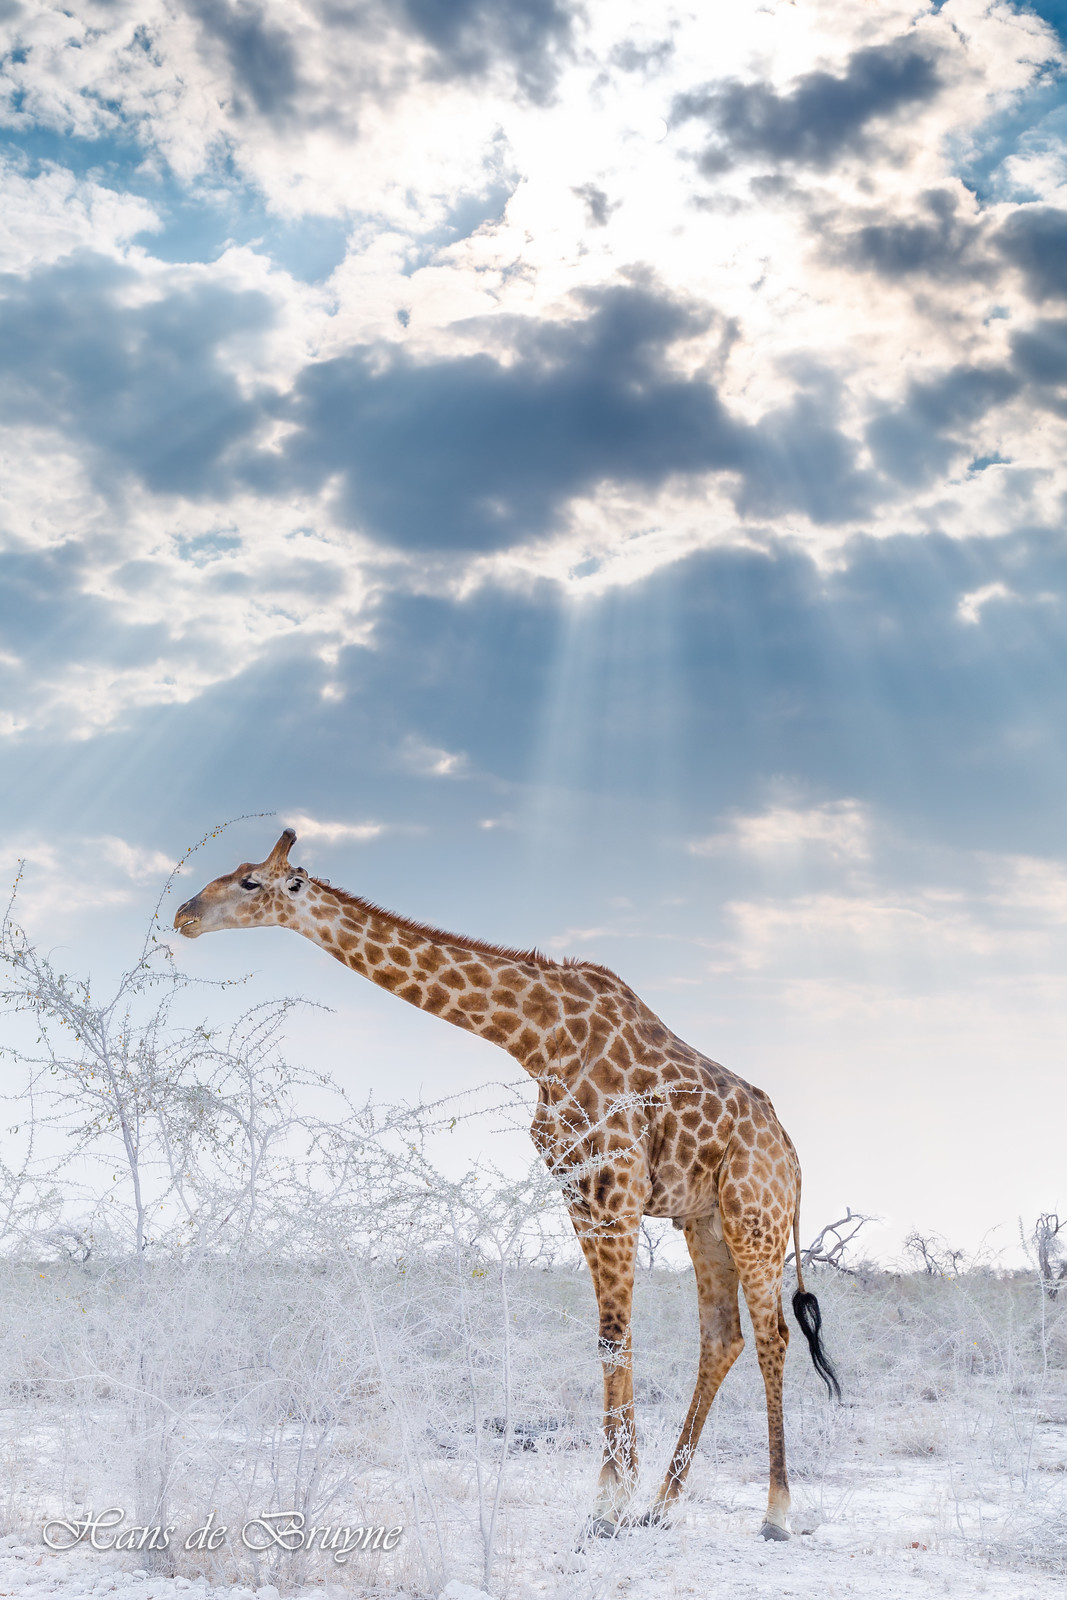 Giraffe in dust